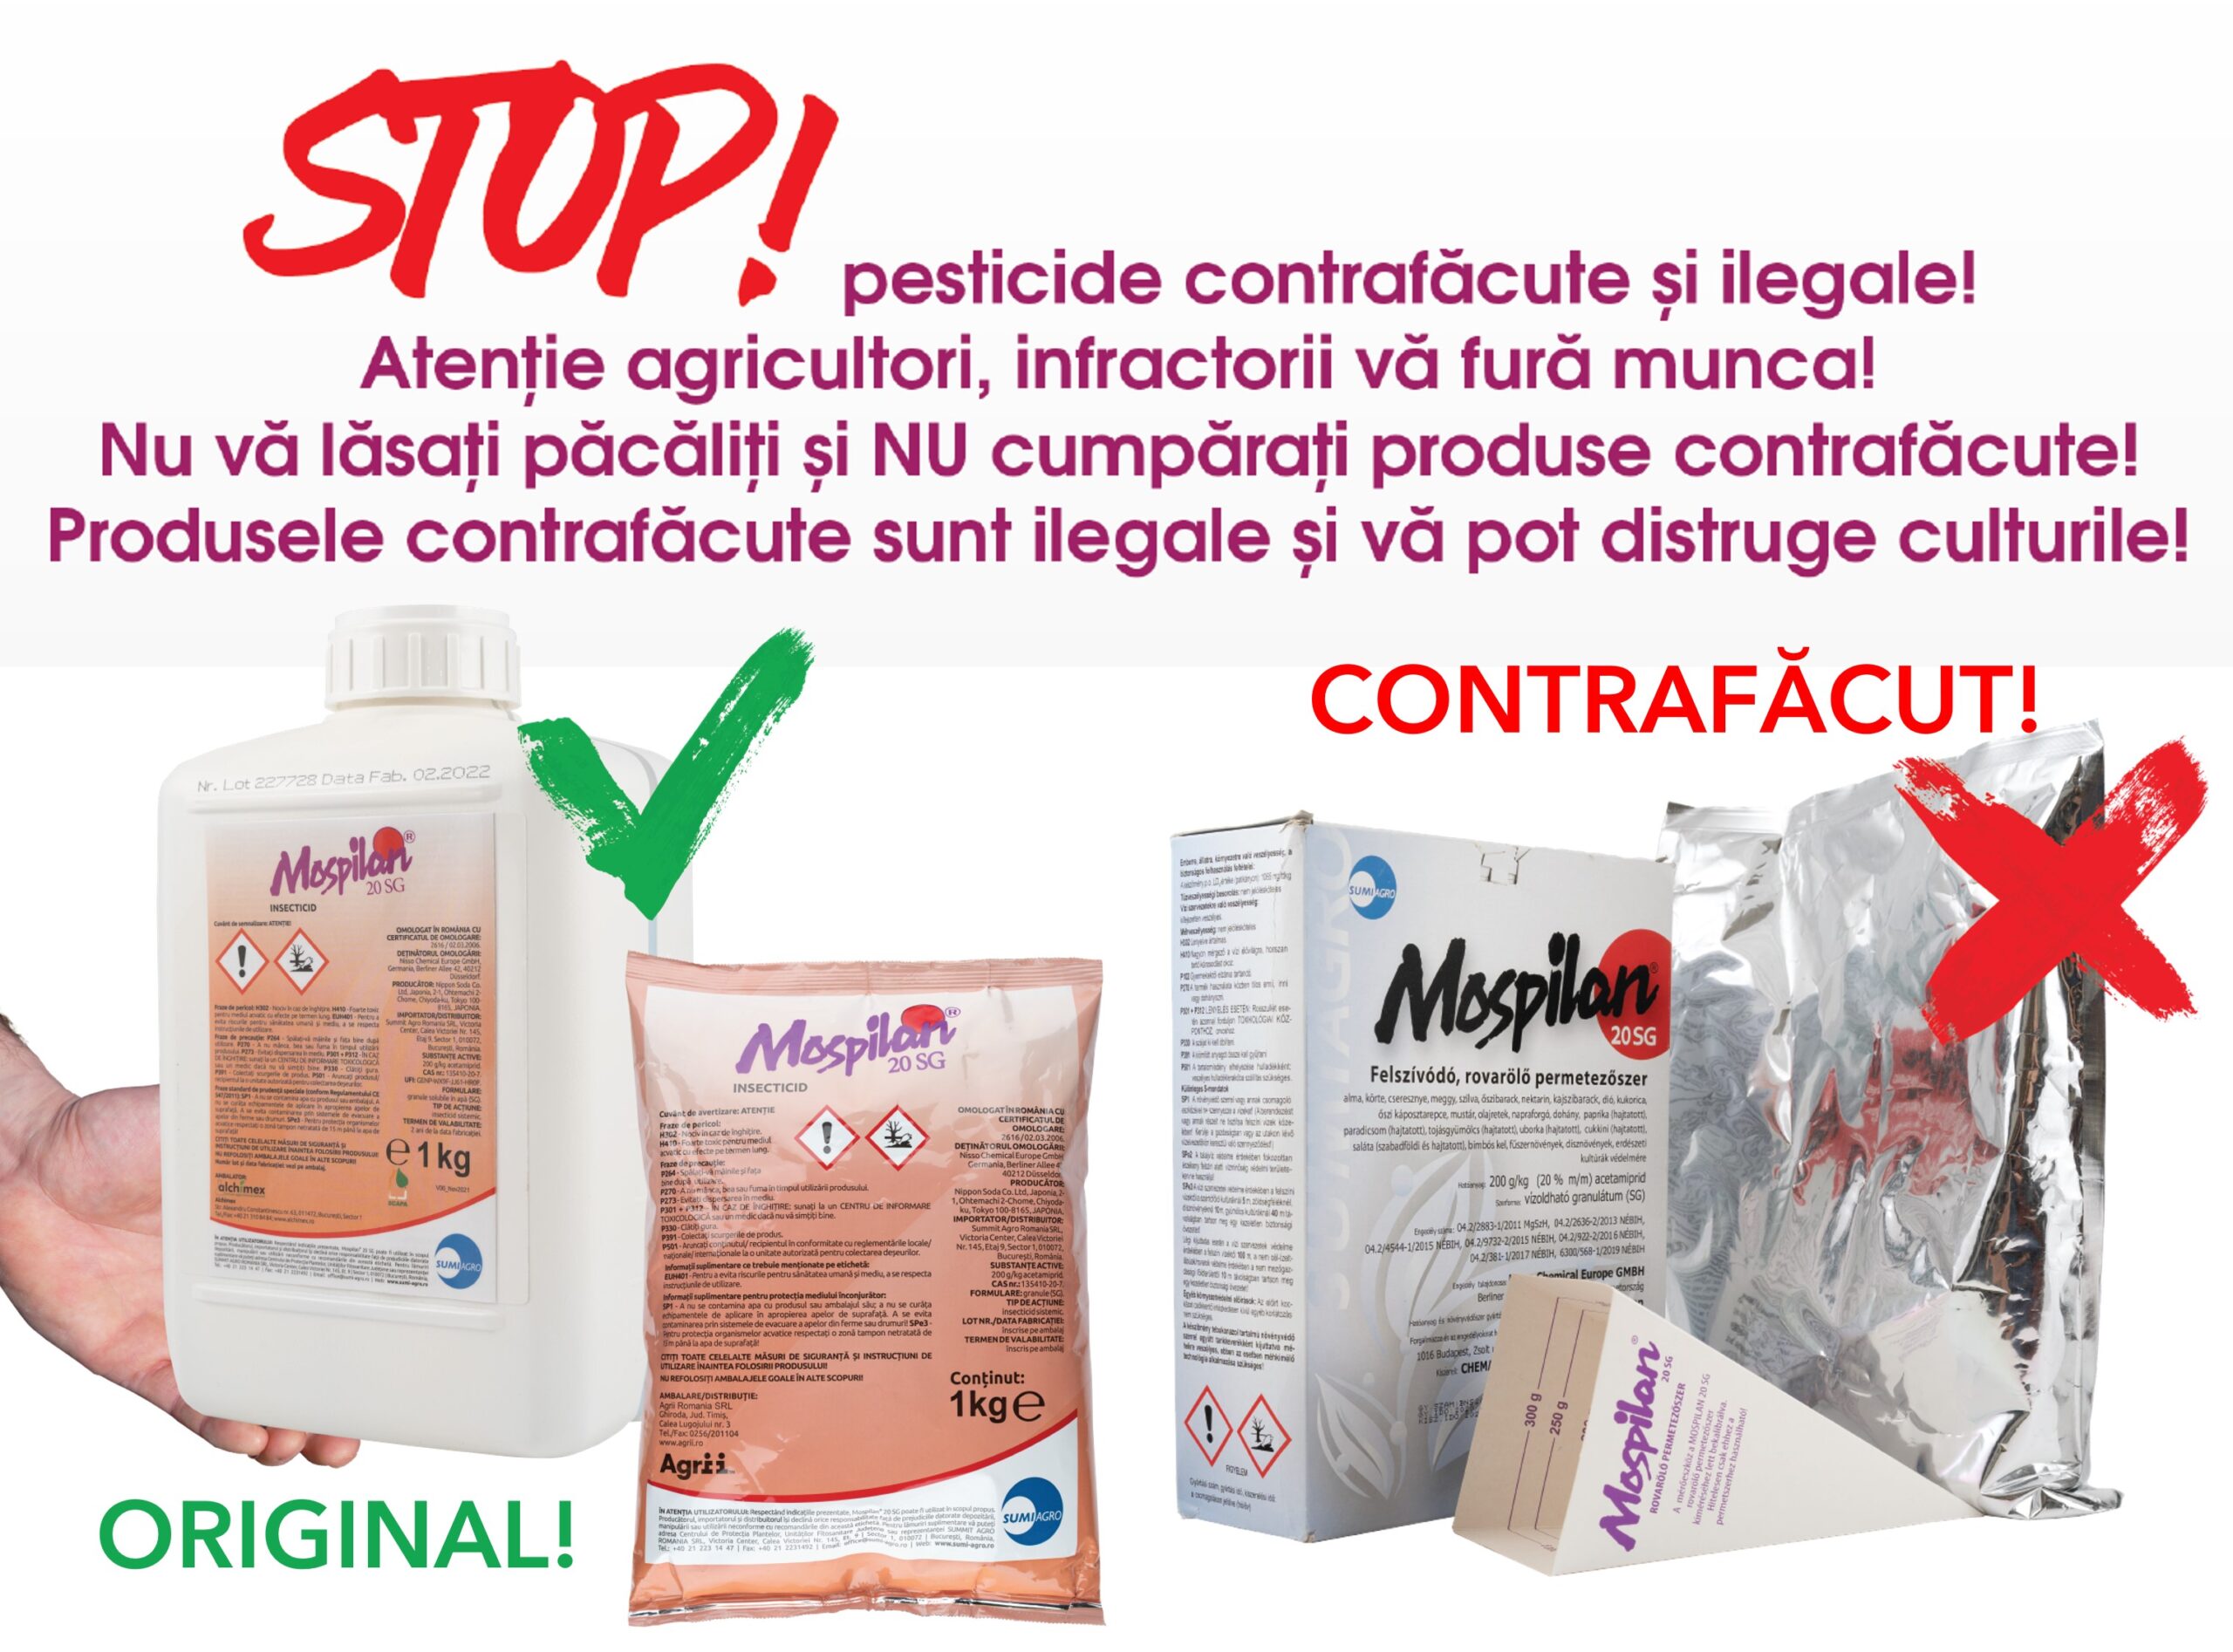 STOP! pesticide contrafăcute și ilegale!